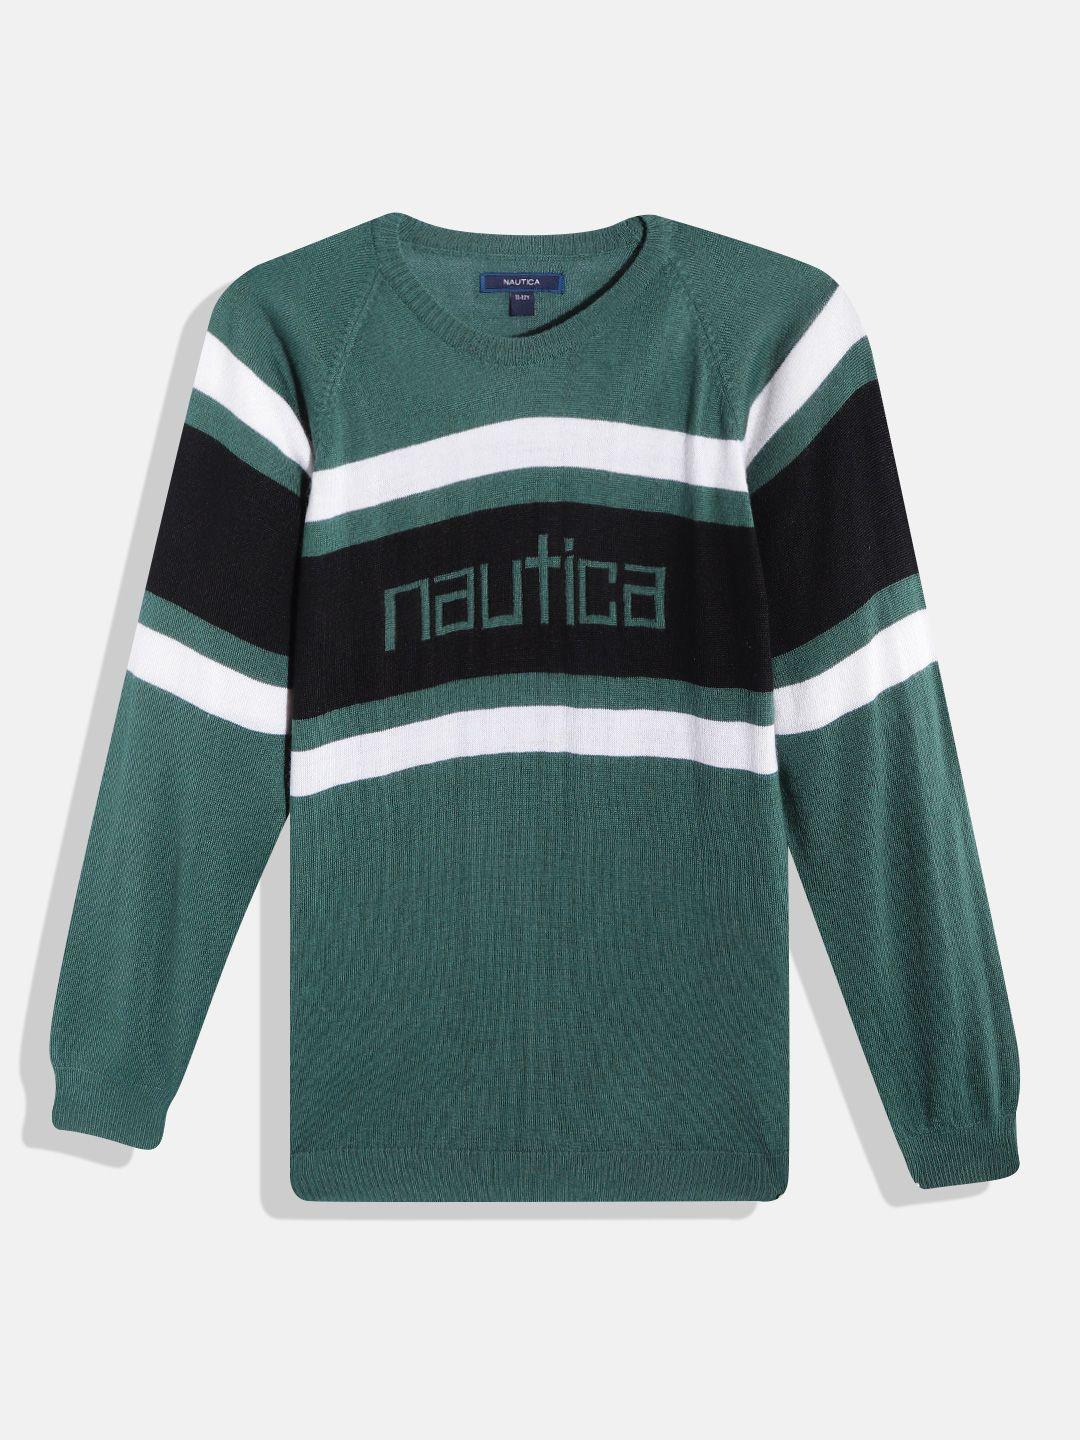 nautica boys green & black striped round neck pullover